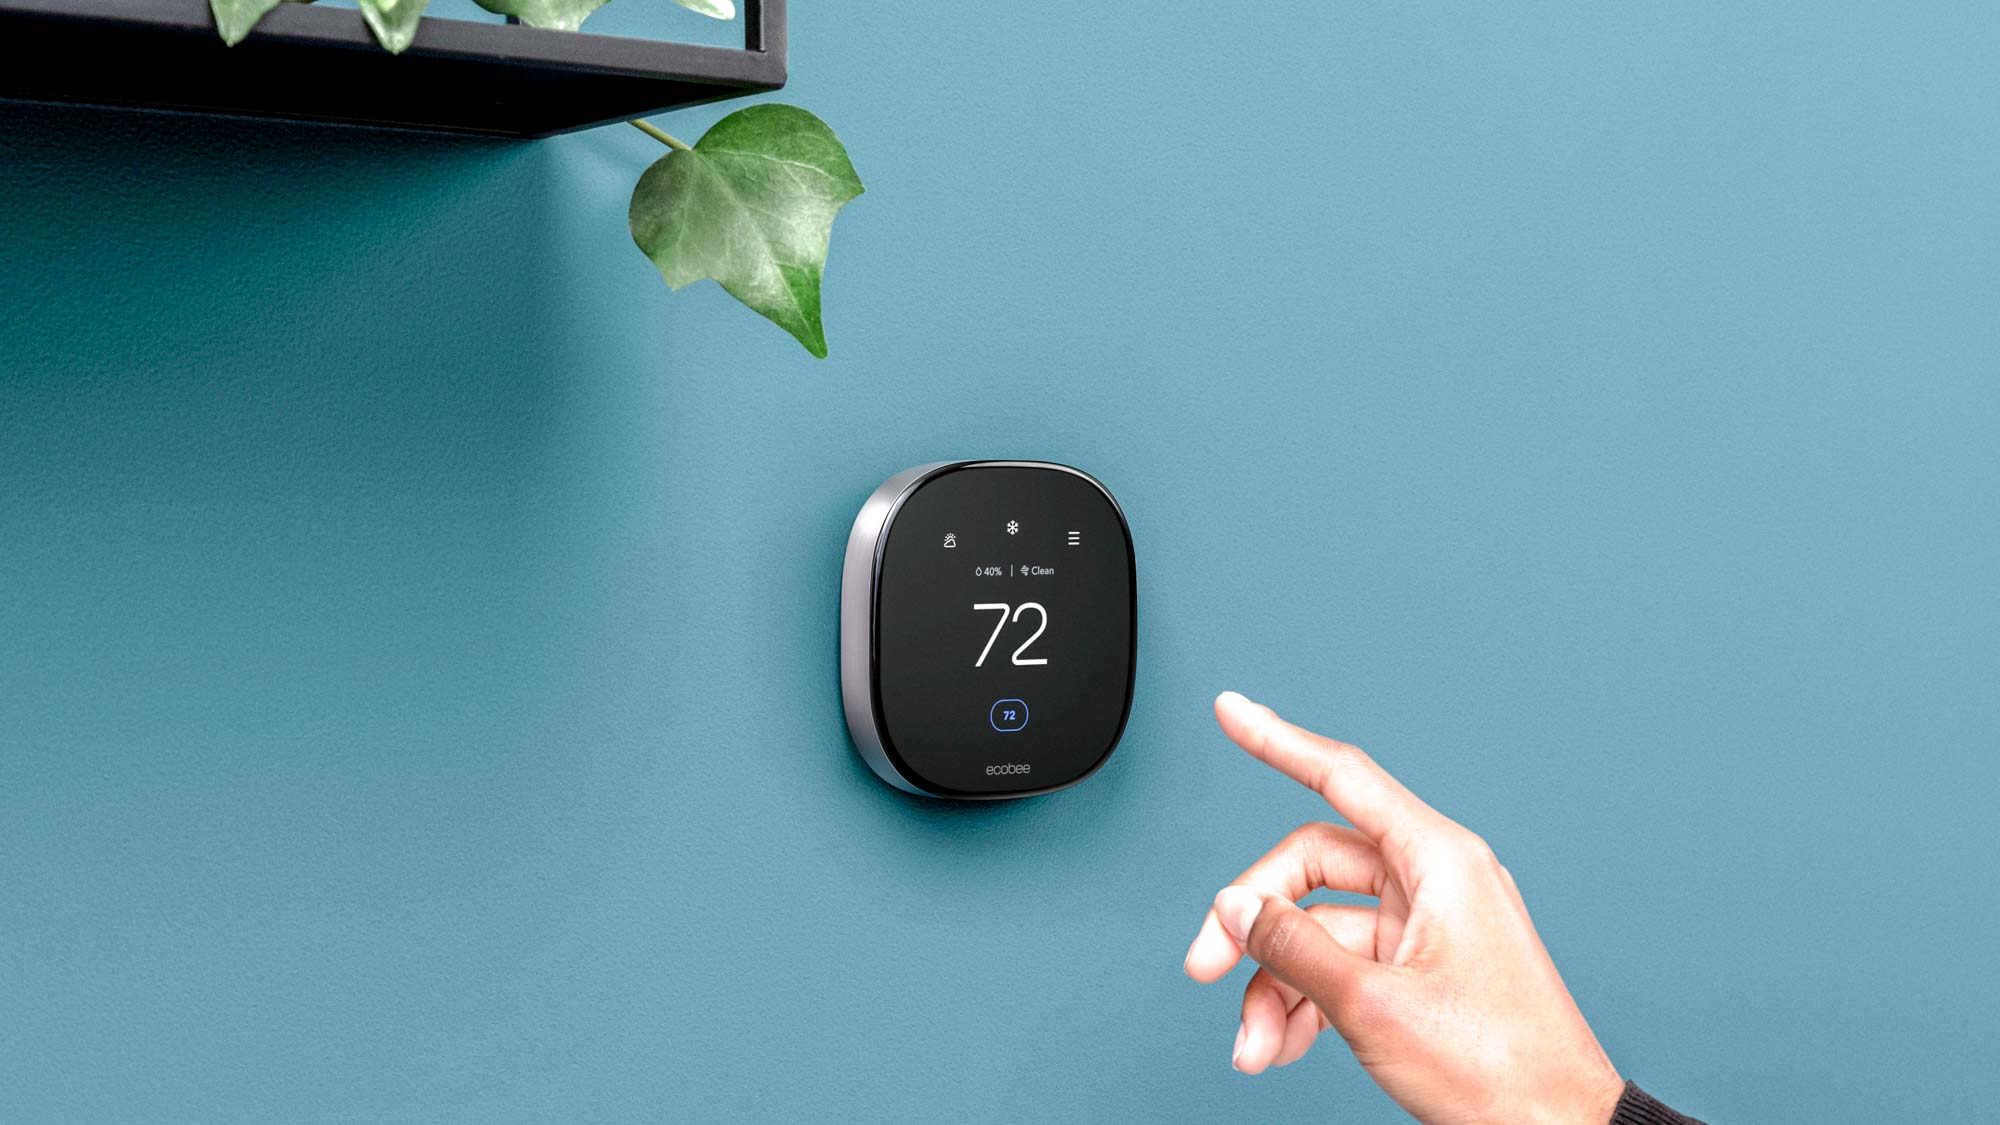 Il termostato HomeKit Premium di Ecobee costerà 249 dollari